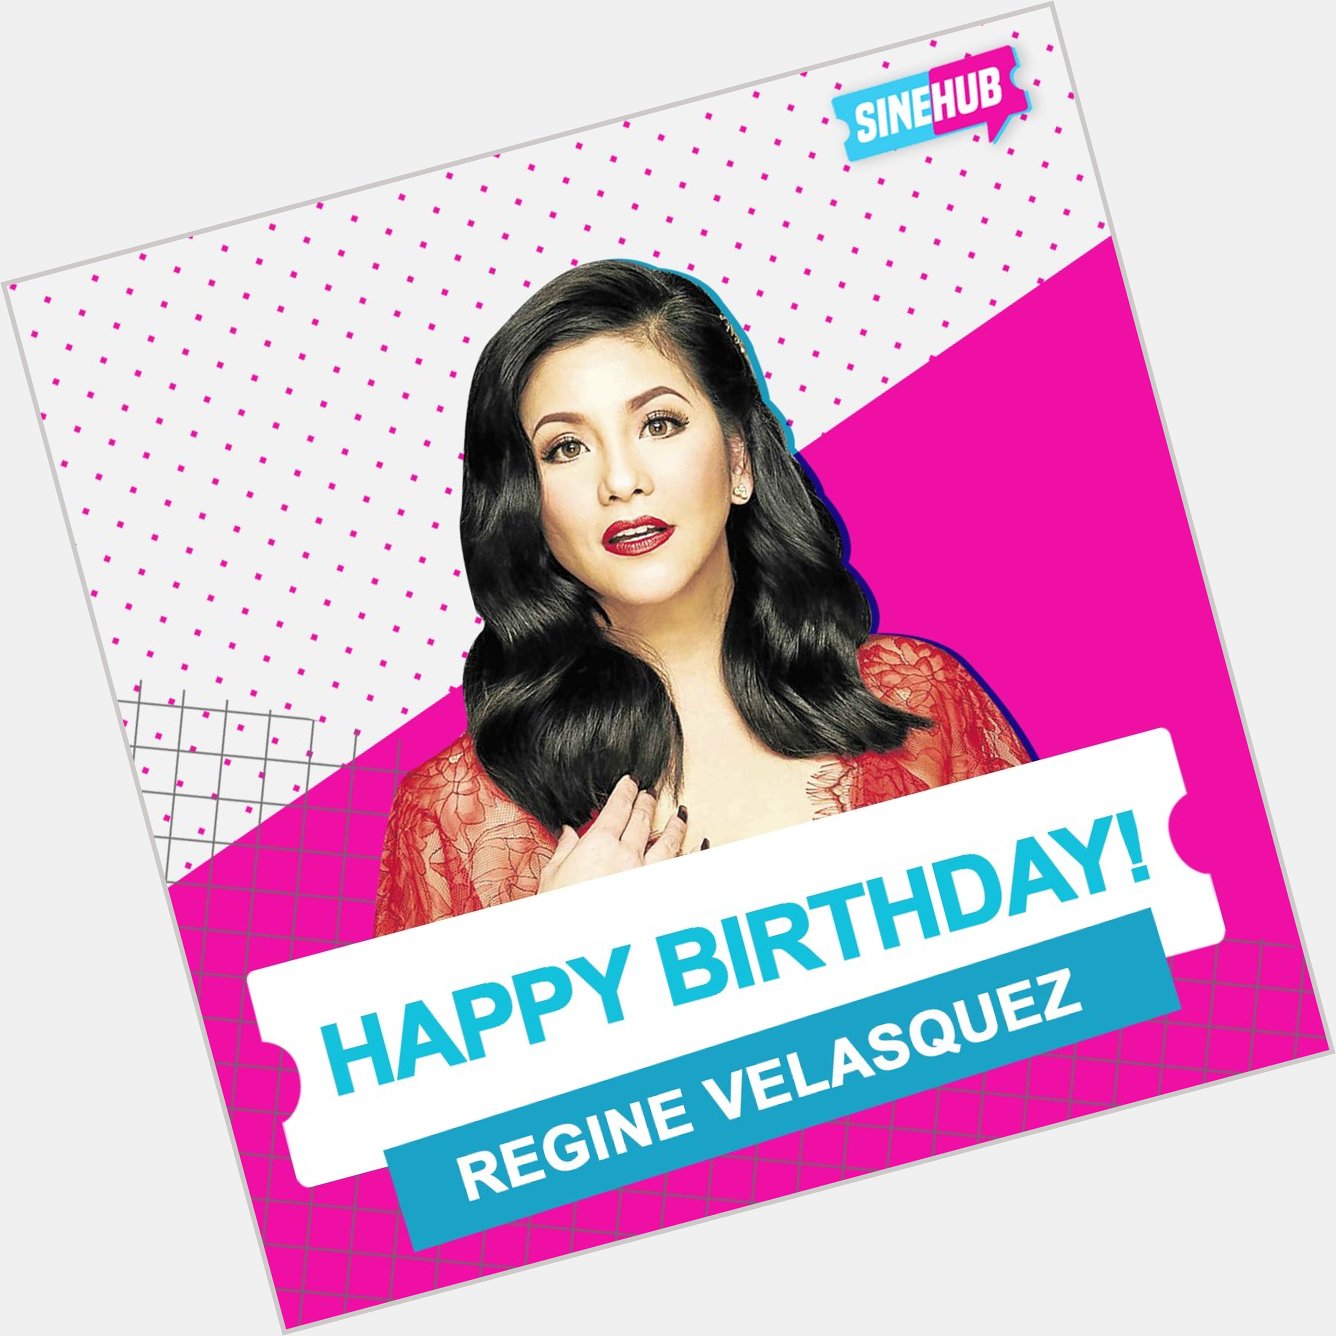 A true icon. Happy birthday to the Asia\s Songbird, Regine Velasquez!   